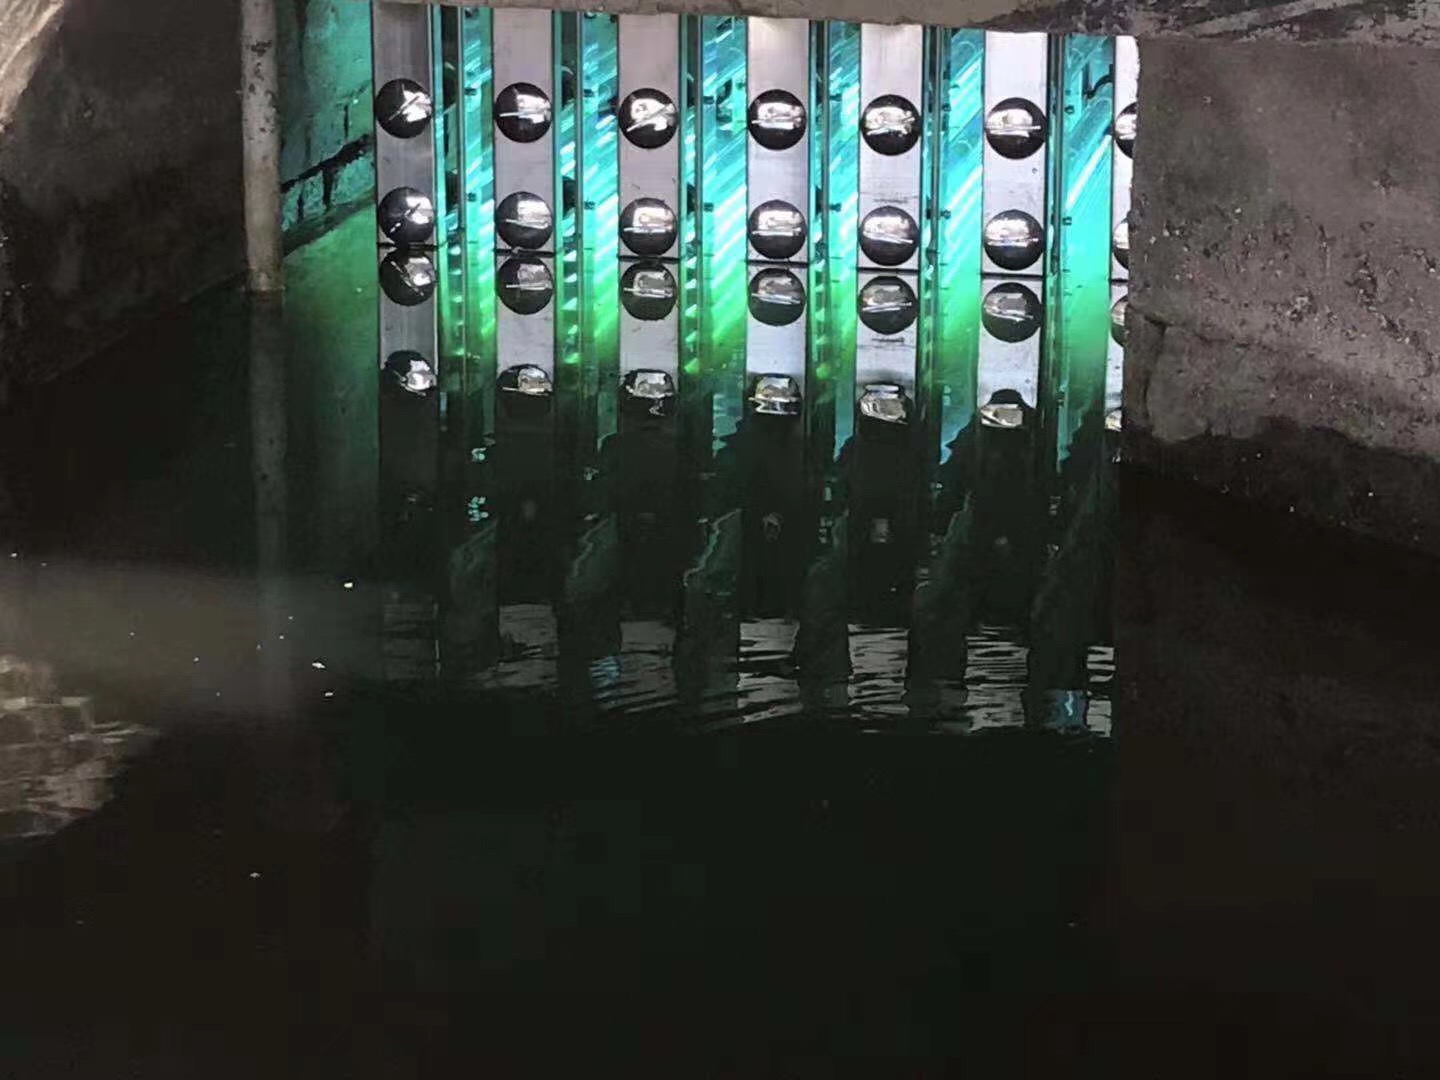 廣州市獵德污水廠改造紫外線消毒模塊系統